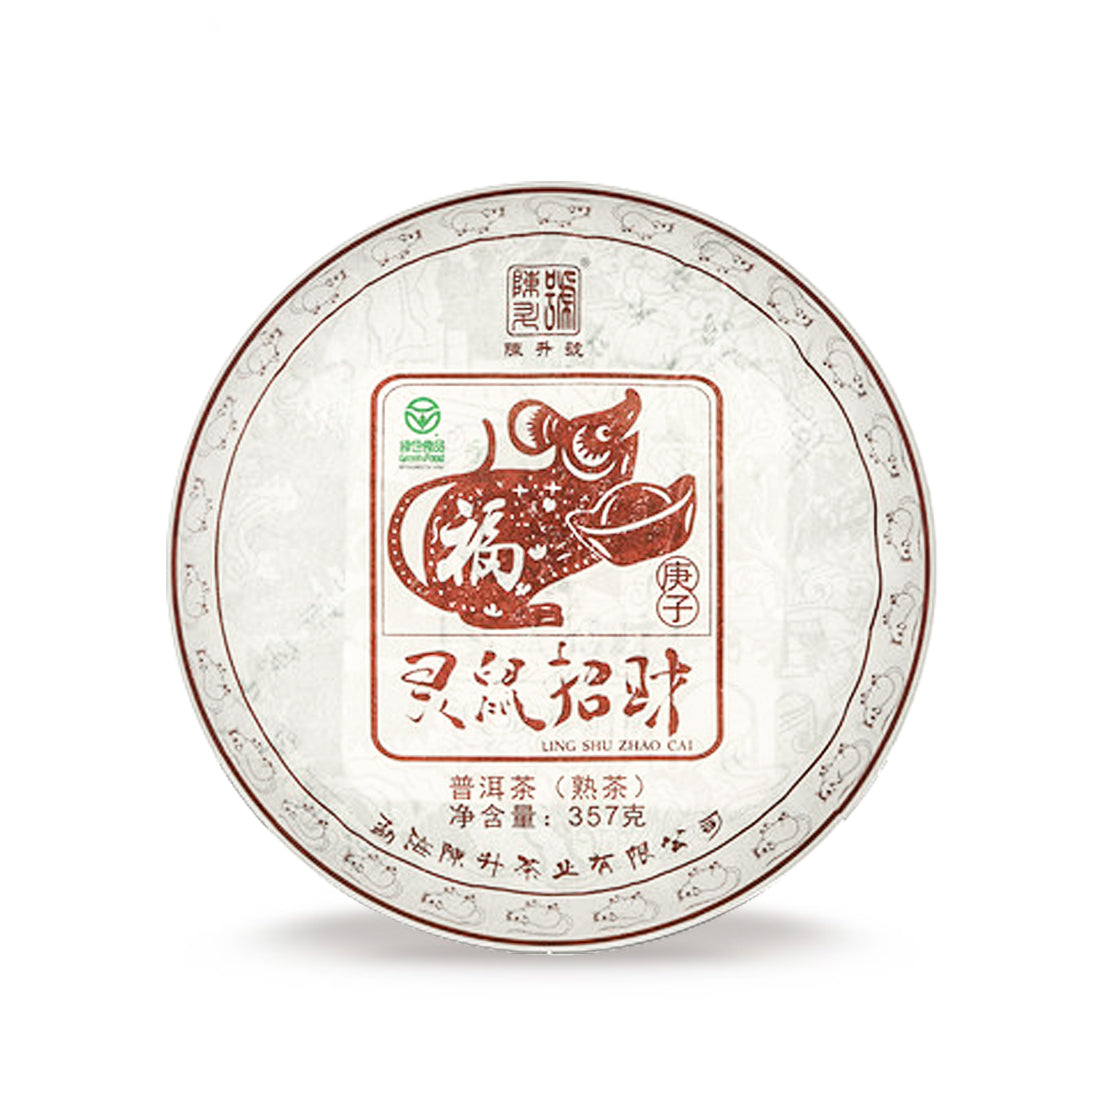 
                  
                    Chen Sheng Hao 2020 Zodiac Rat Ripe Pu'er Tea Cake
                  
                